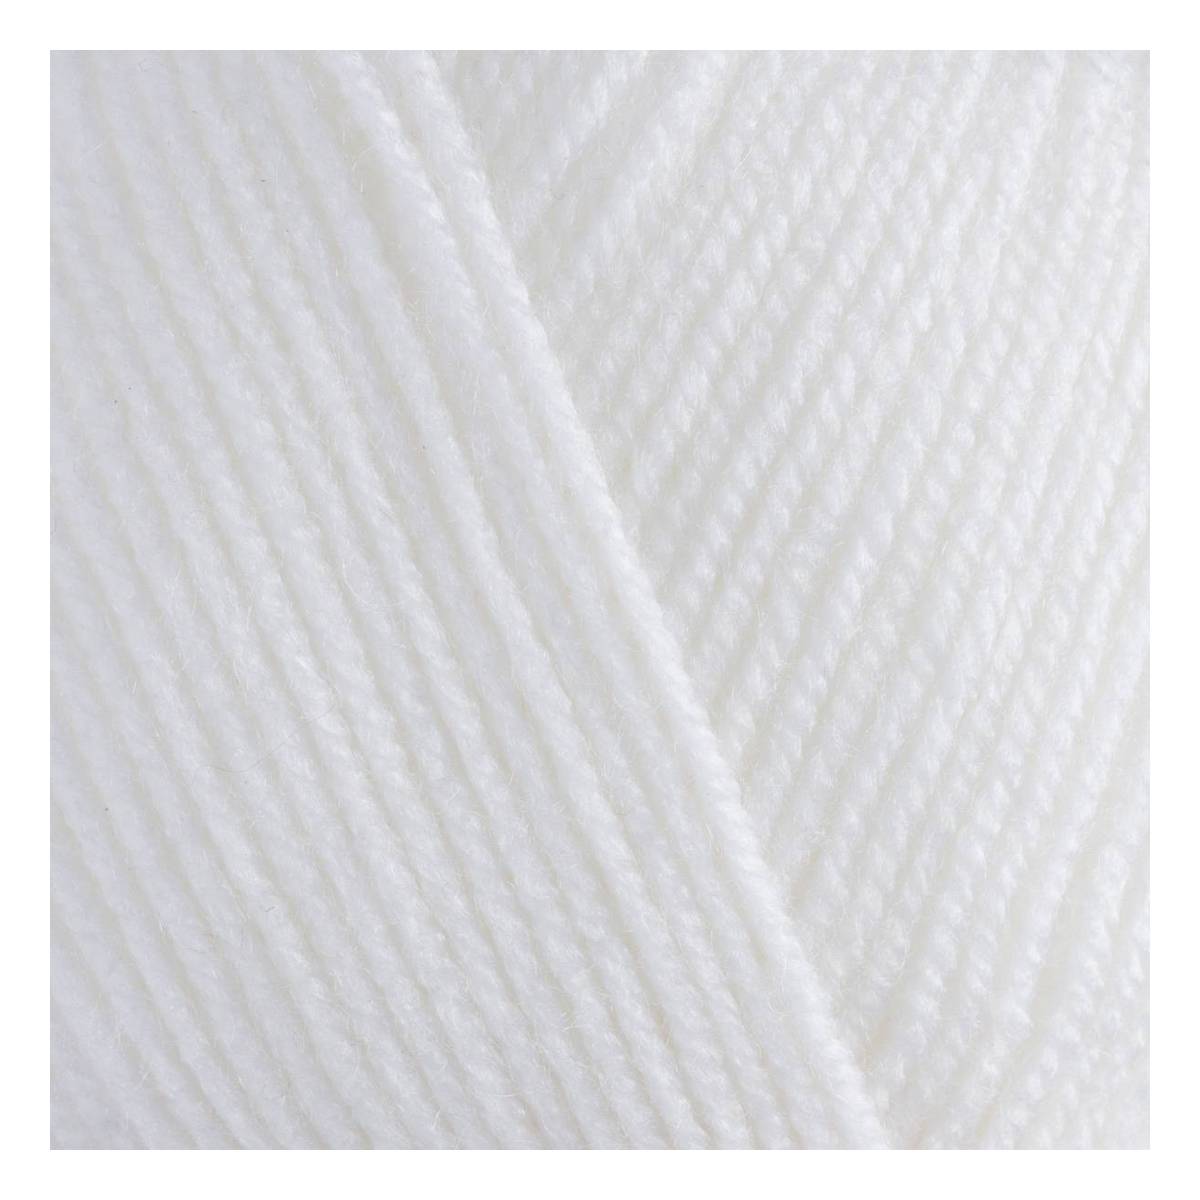 Women's Institute White Premium Acrylic Yarn 100g